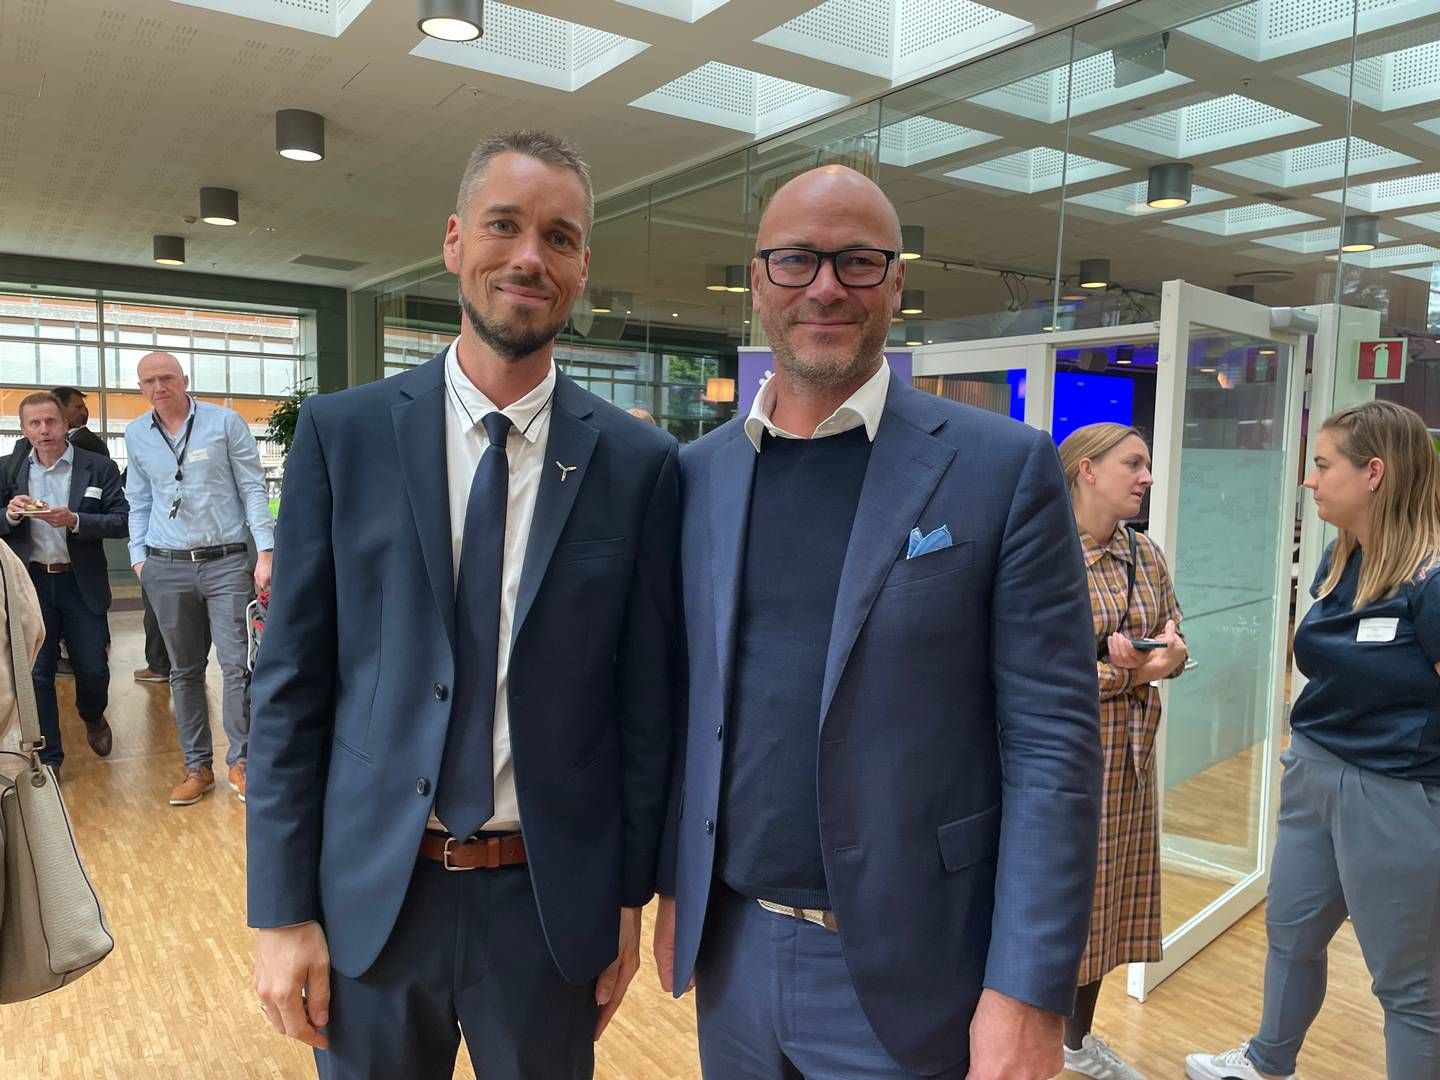 SKRYTER: Simen Elvestad (til høyre) er administrerende direktør i Seagust. Her står han sammen med Christian Kjær Larsen, teknisk prosjektleder i Vattenfall, som Seagust samarbeider med på norsk sokkel. | Foto: Harald Amdal